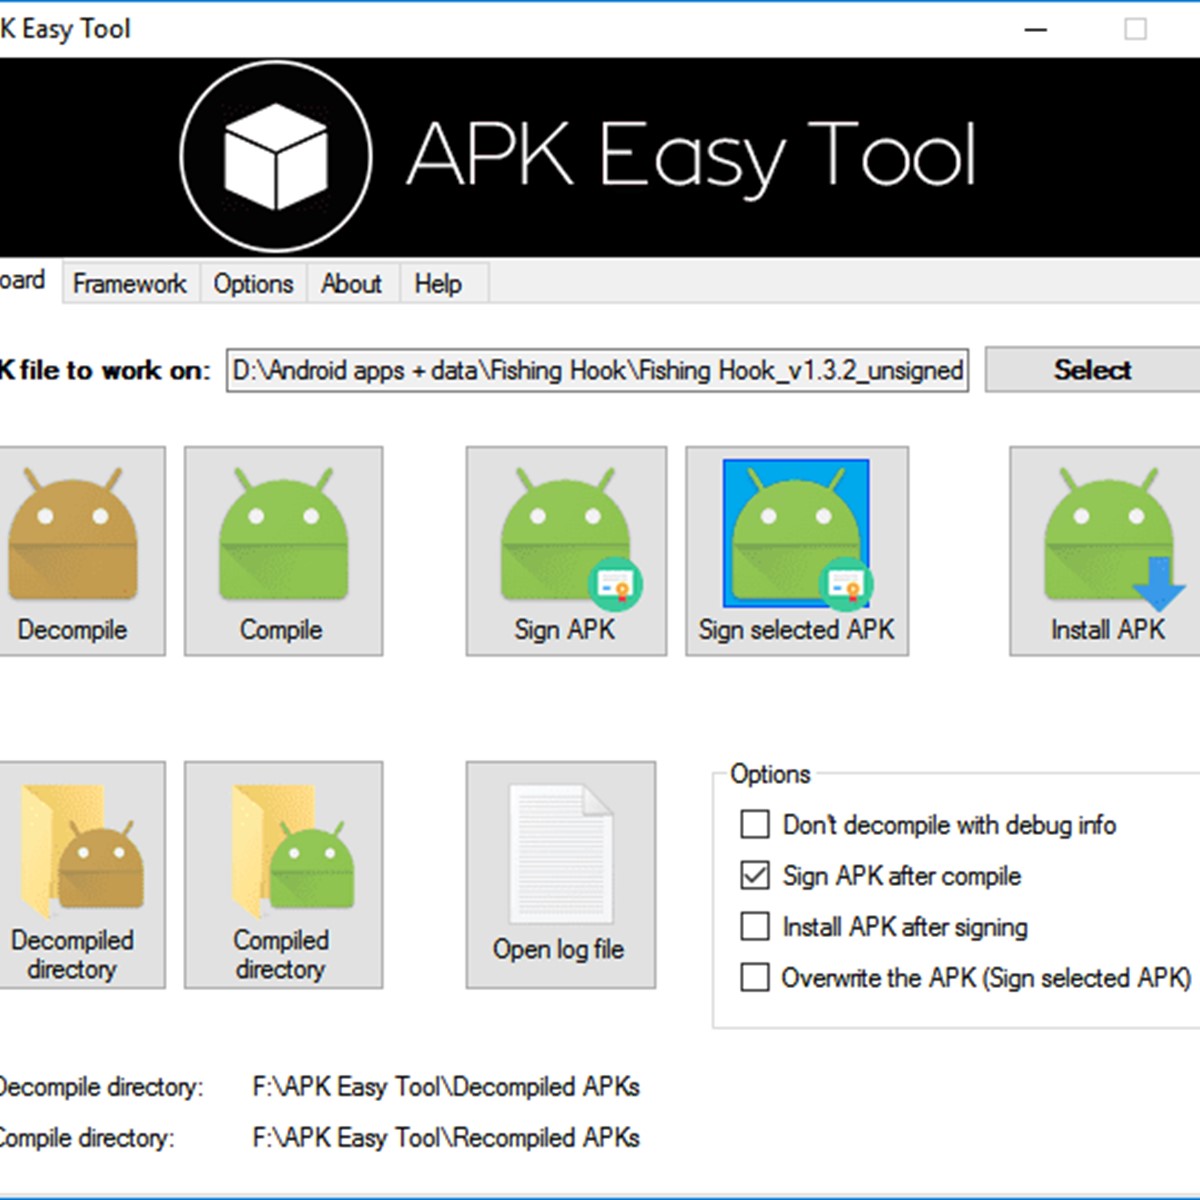 apk-easy-tool_114399_full